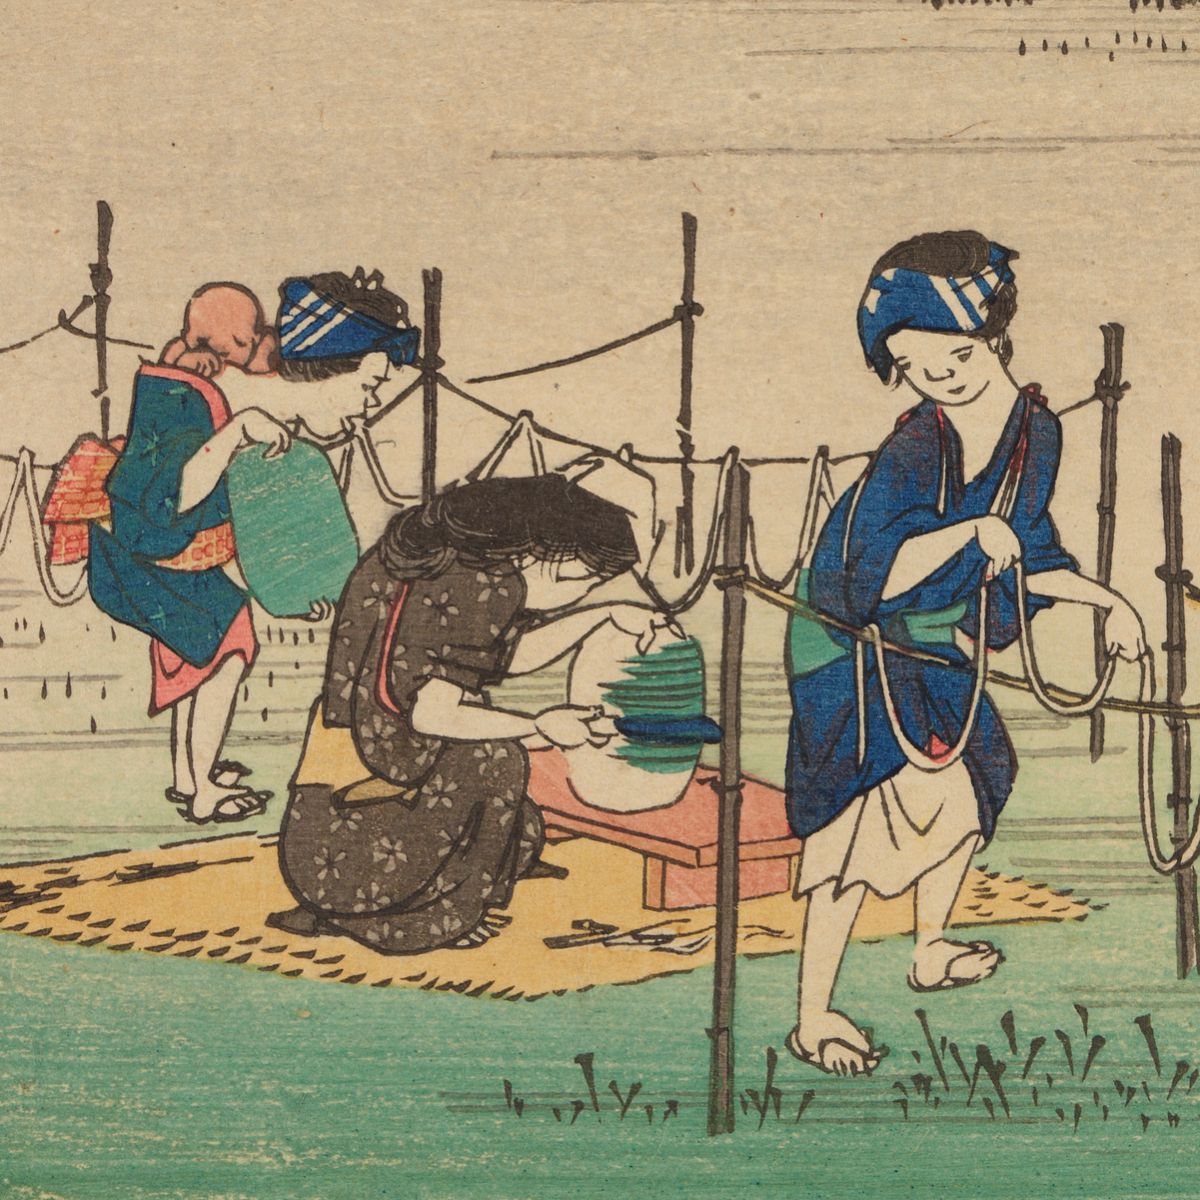 Utagawa Hiroshige, Minakuchi, grafika artystyczna, drzeworyt, sztuka, sztuka japońska, ukiyo-e, drzeworyty japońskie, niezła sztuka